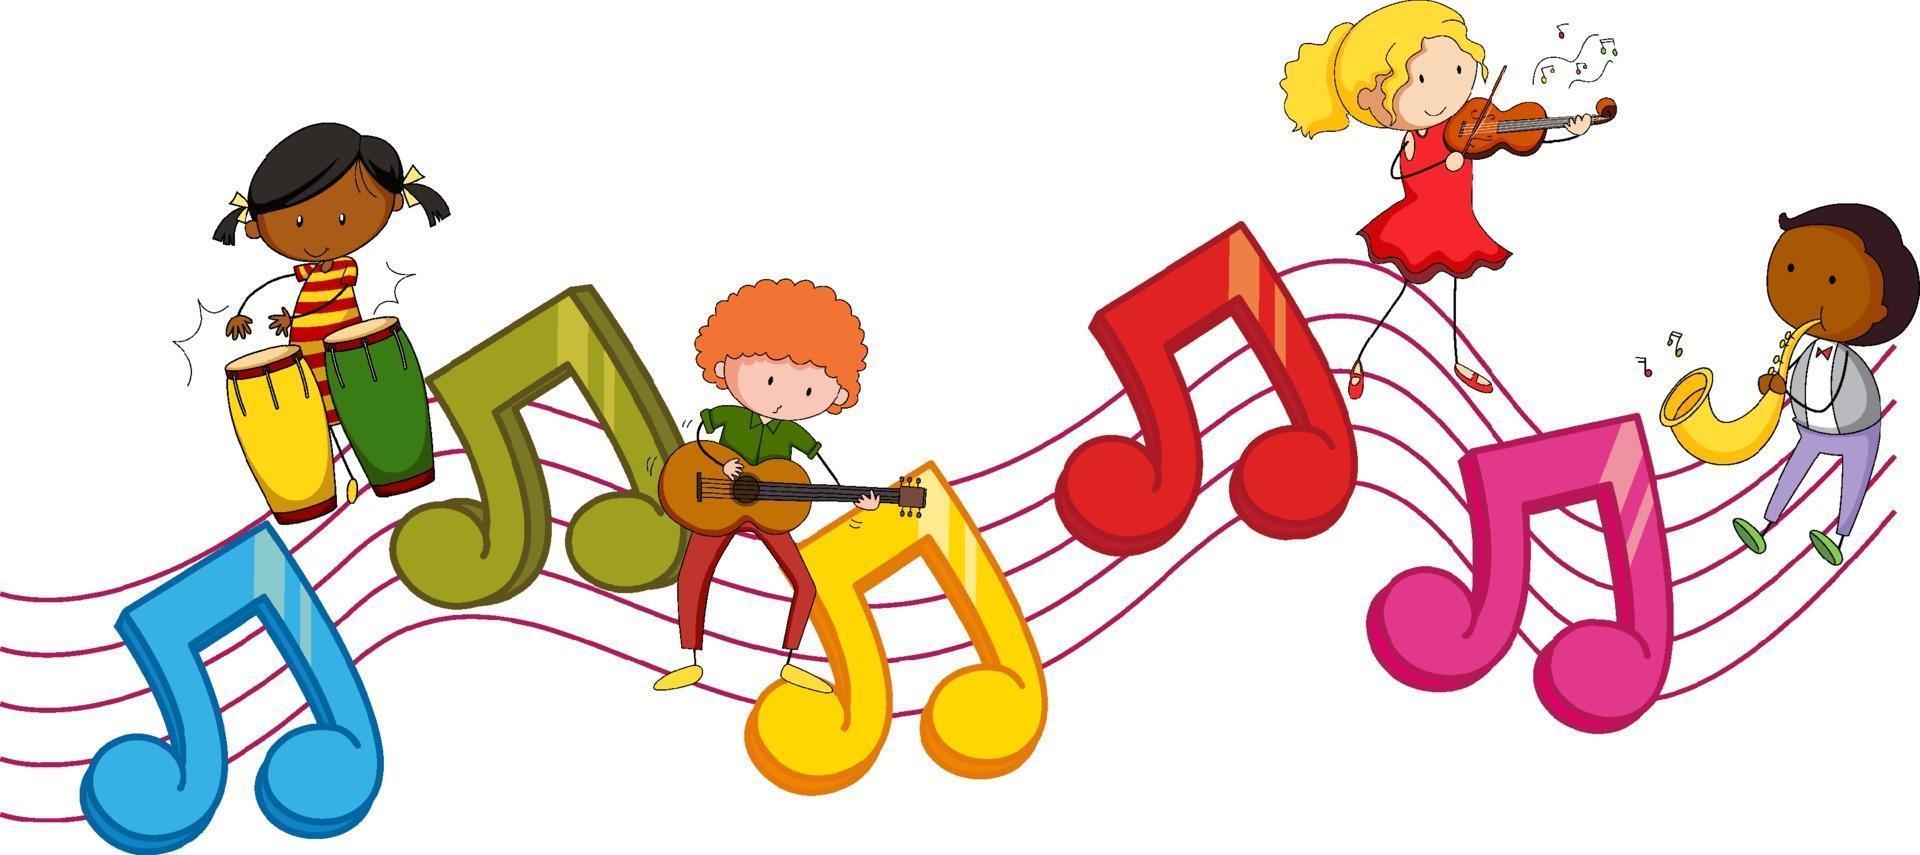 simboli di melodia musicale con molti personaggi dei cartoni animati per bambini scarabocchiati vettore